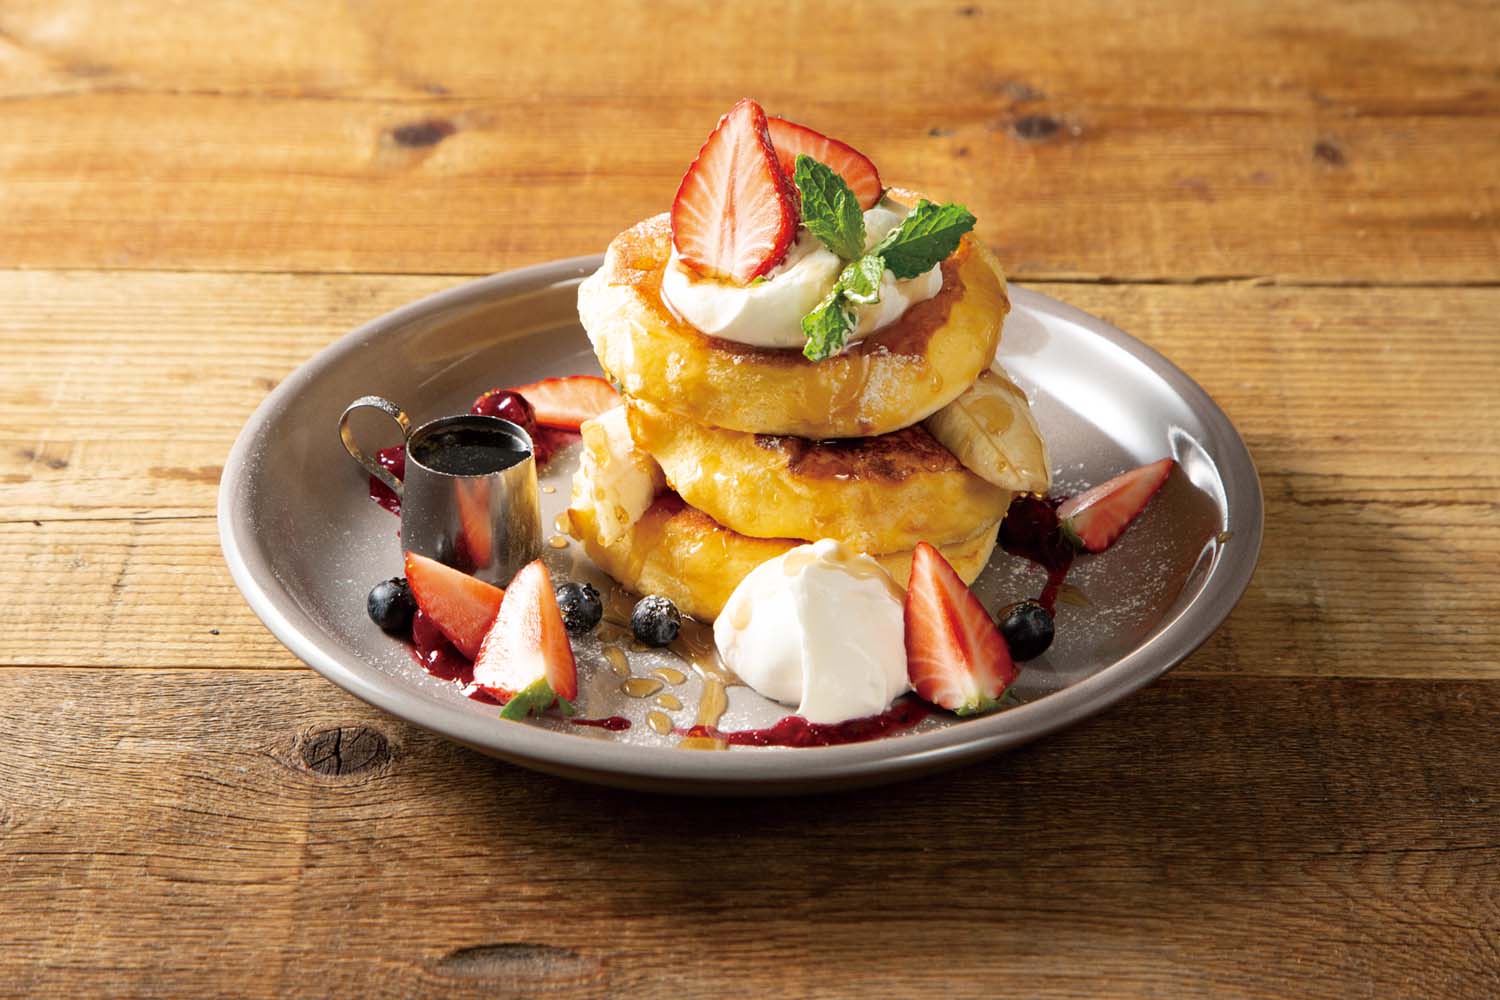 Fresh Berries Souffle Pancakeは、スフレパンケーキが3枚と2枚がある。